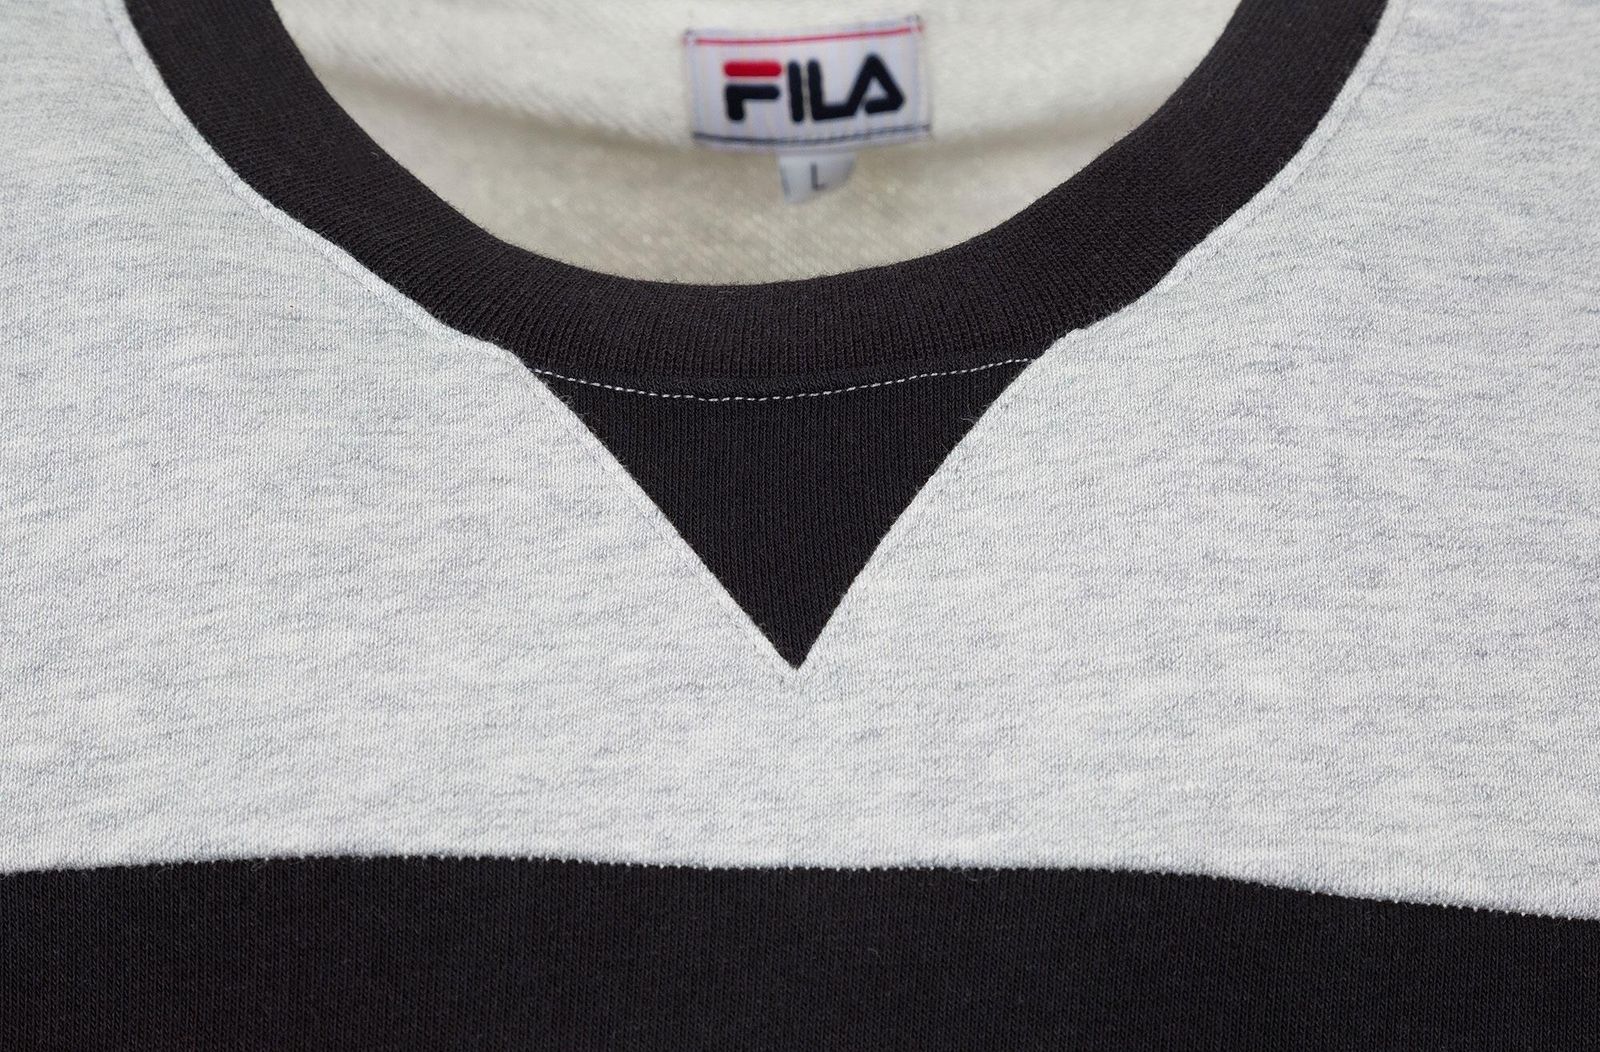   Fila Men's jumper, : . S19AFLJUM08-2A.  XL (52)